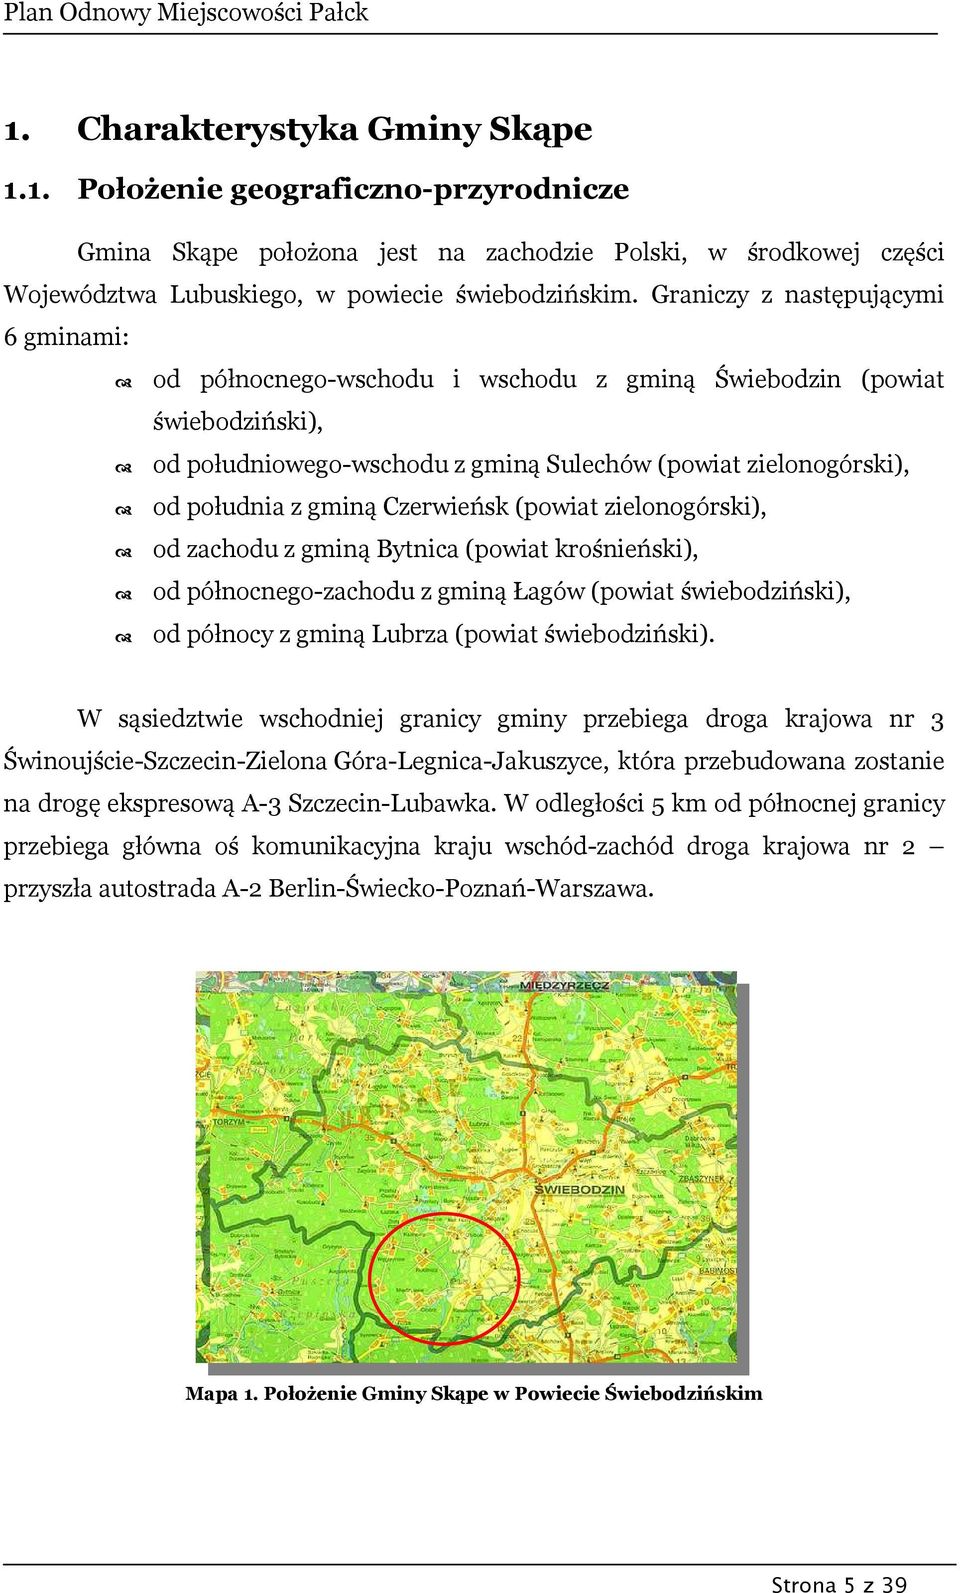 Czerwieńsk (powiat zielonogórski), od zachodu z gminą Bytnica (powiat krośnieński), od północnego-zachodu z gminą Łagów (powiat świebodziński), od północy z gminą Lubrza (powiat świebodziński).